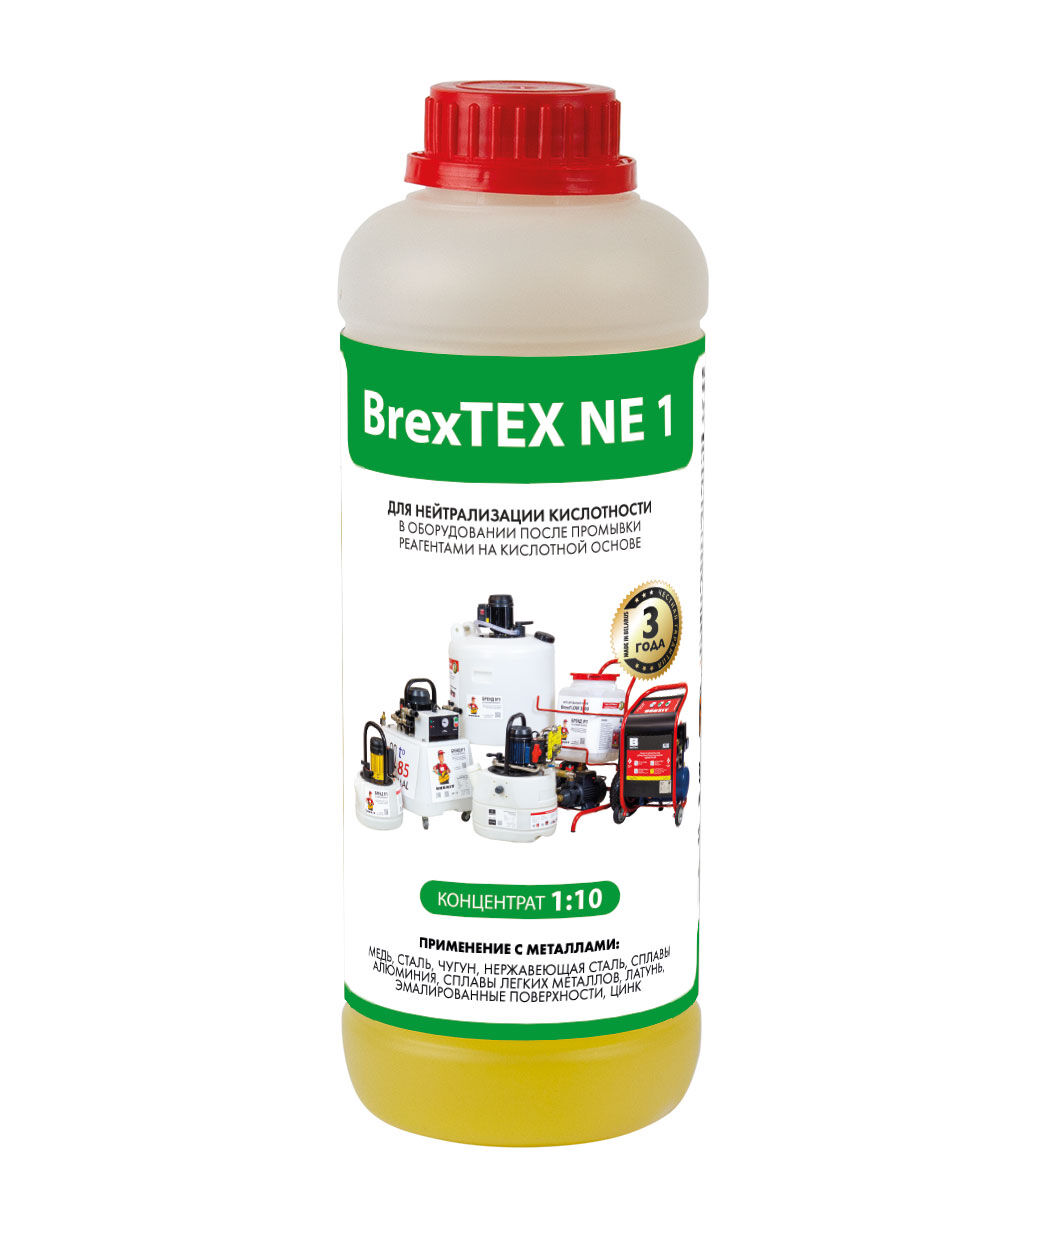 Реагент для нейтрализации поверхности оборудования BrexTEX NE 1 brexit